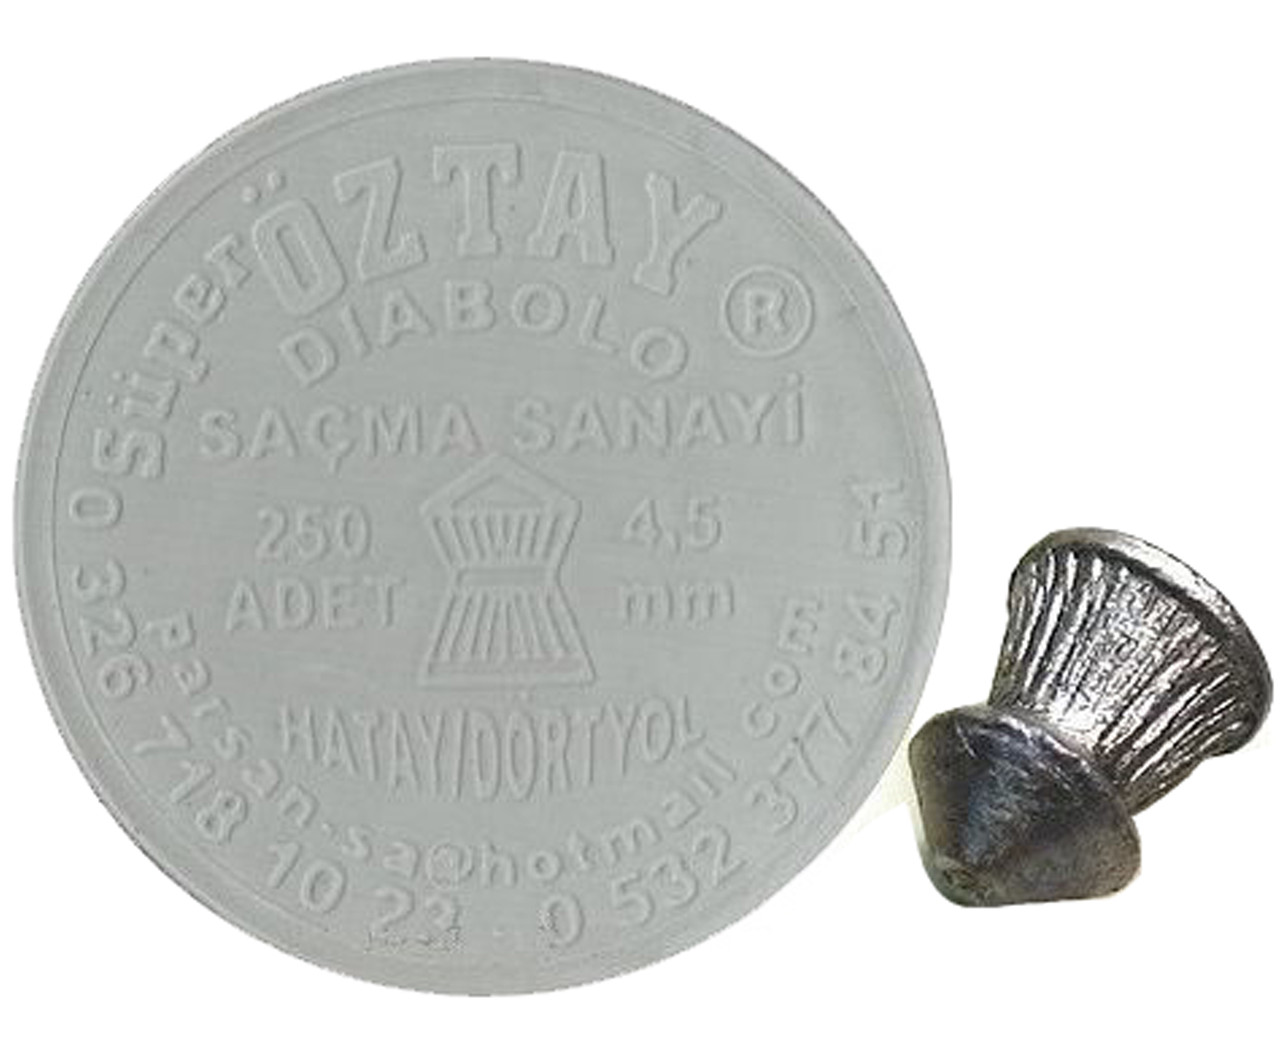 Пули пневматические Super Oztay (Yilmaz) 4.5 мм 0,52 грамма (250 шт.)